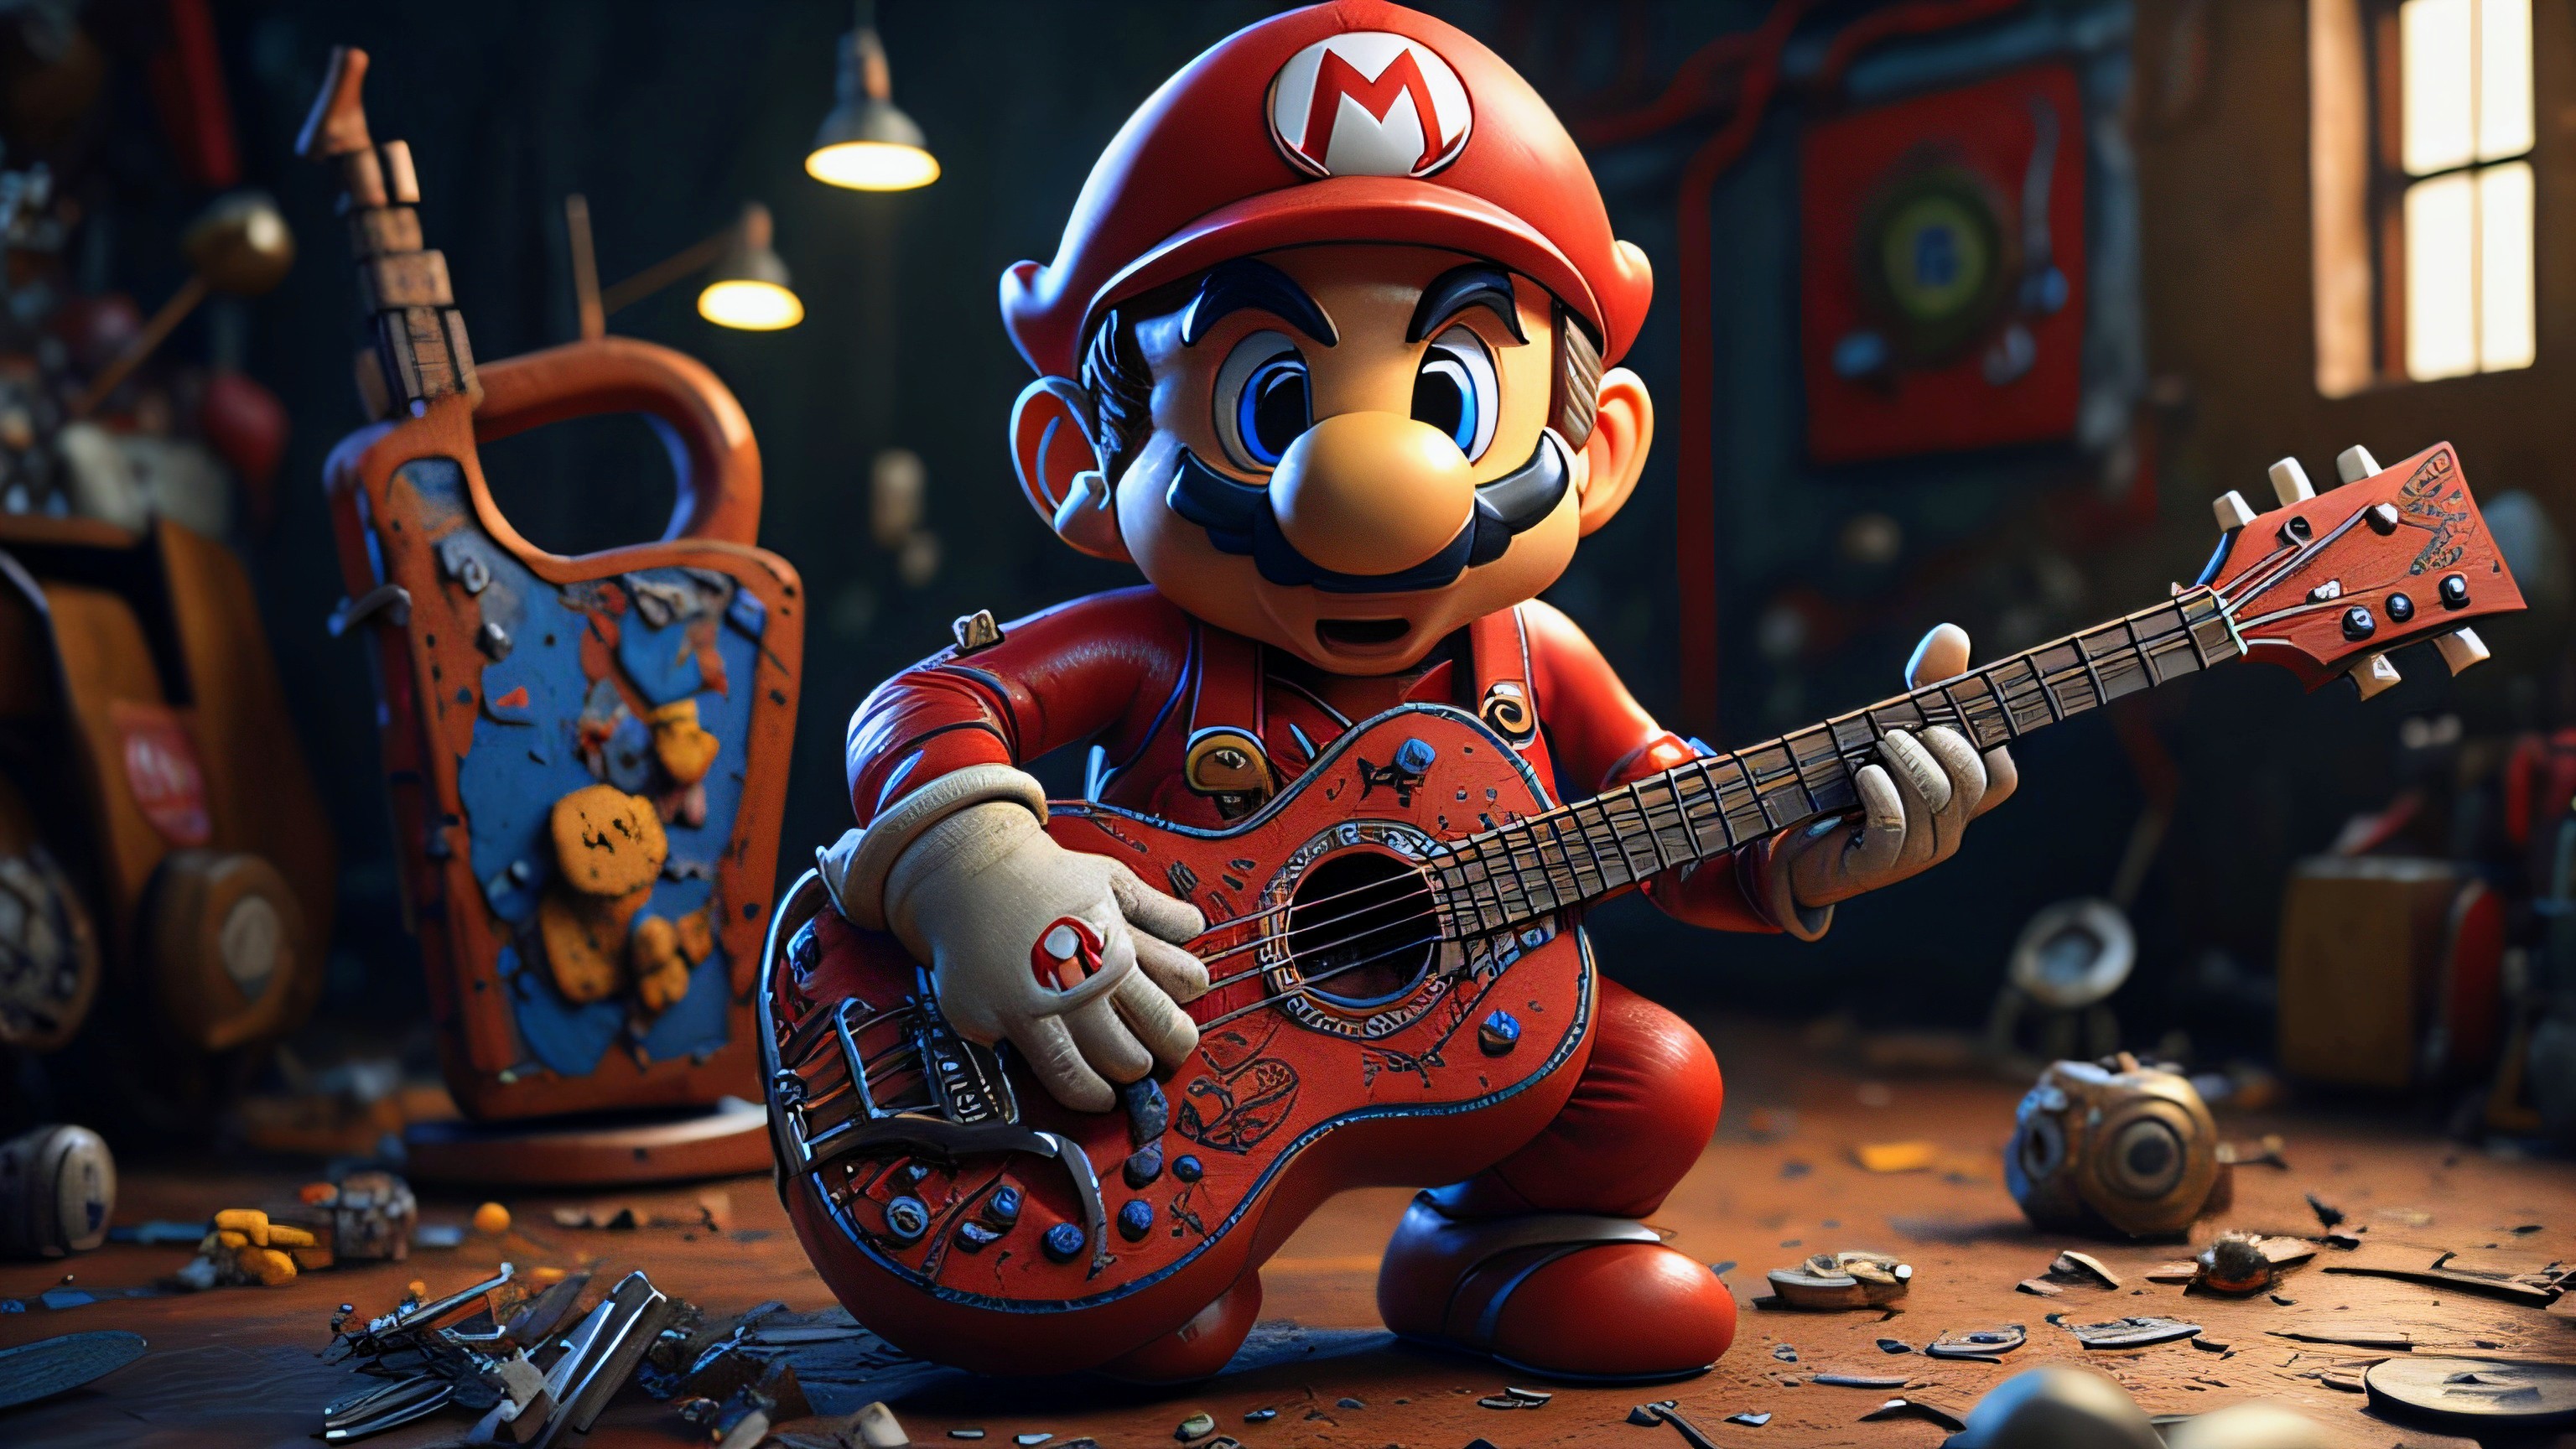 Guitar Hero: Mario Mix, Fantendo - Game Ideas & More